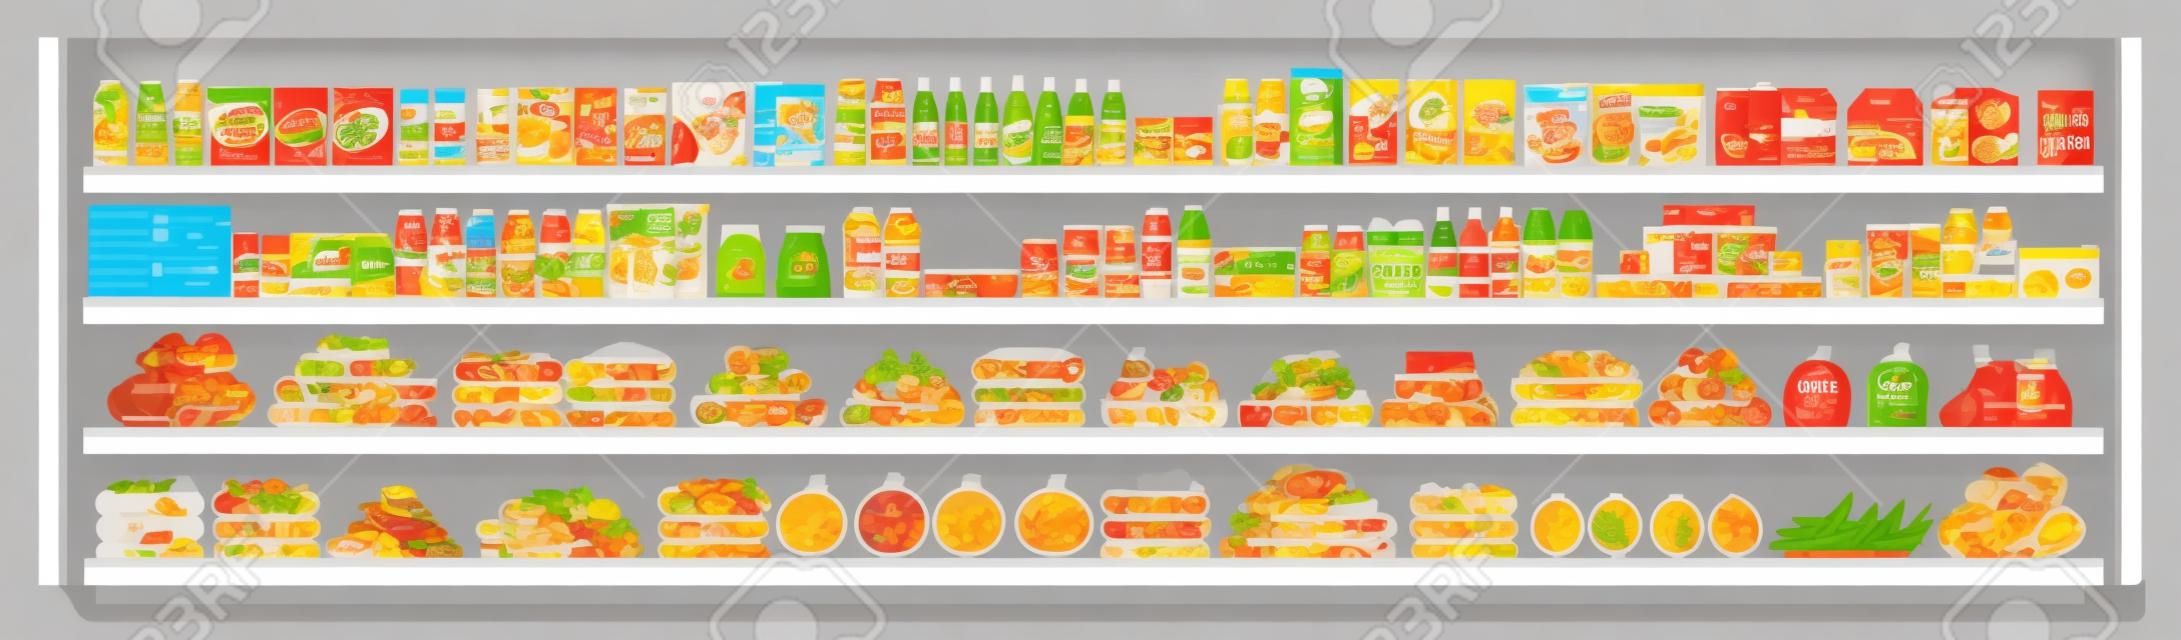 Articles d'épicerie sur les étagères des supermarchés et offres complètes avec un assortiment de nourriture et de boissons illustration vectorielle à plat d'arrière-plan harmonieux. Concept de magasinage et de vente au détail.